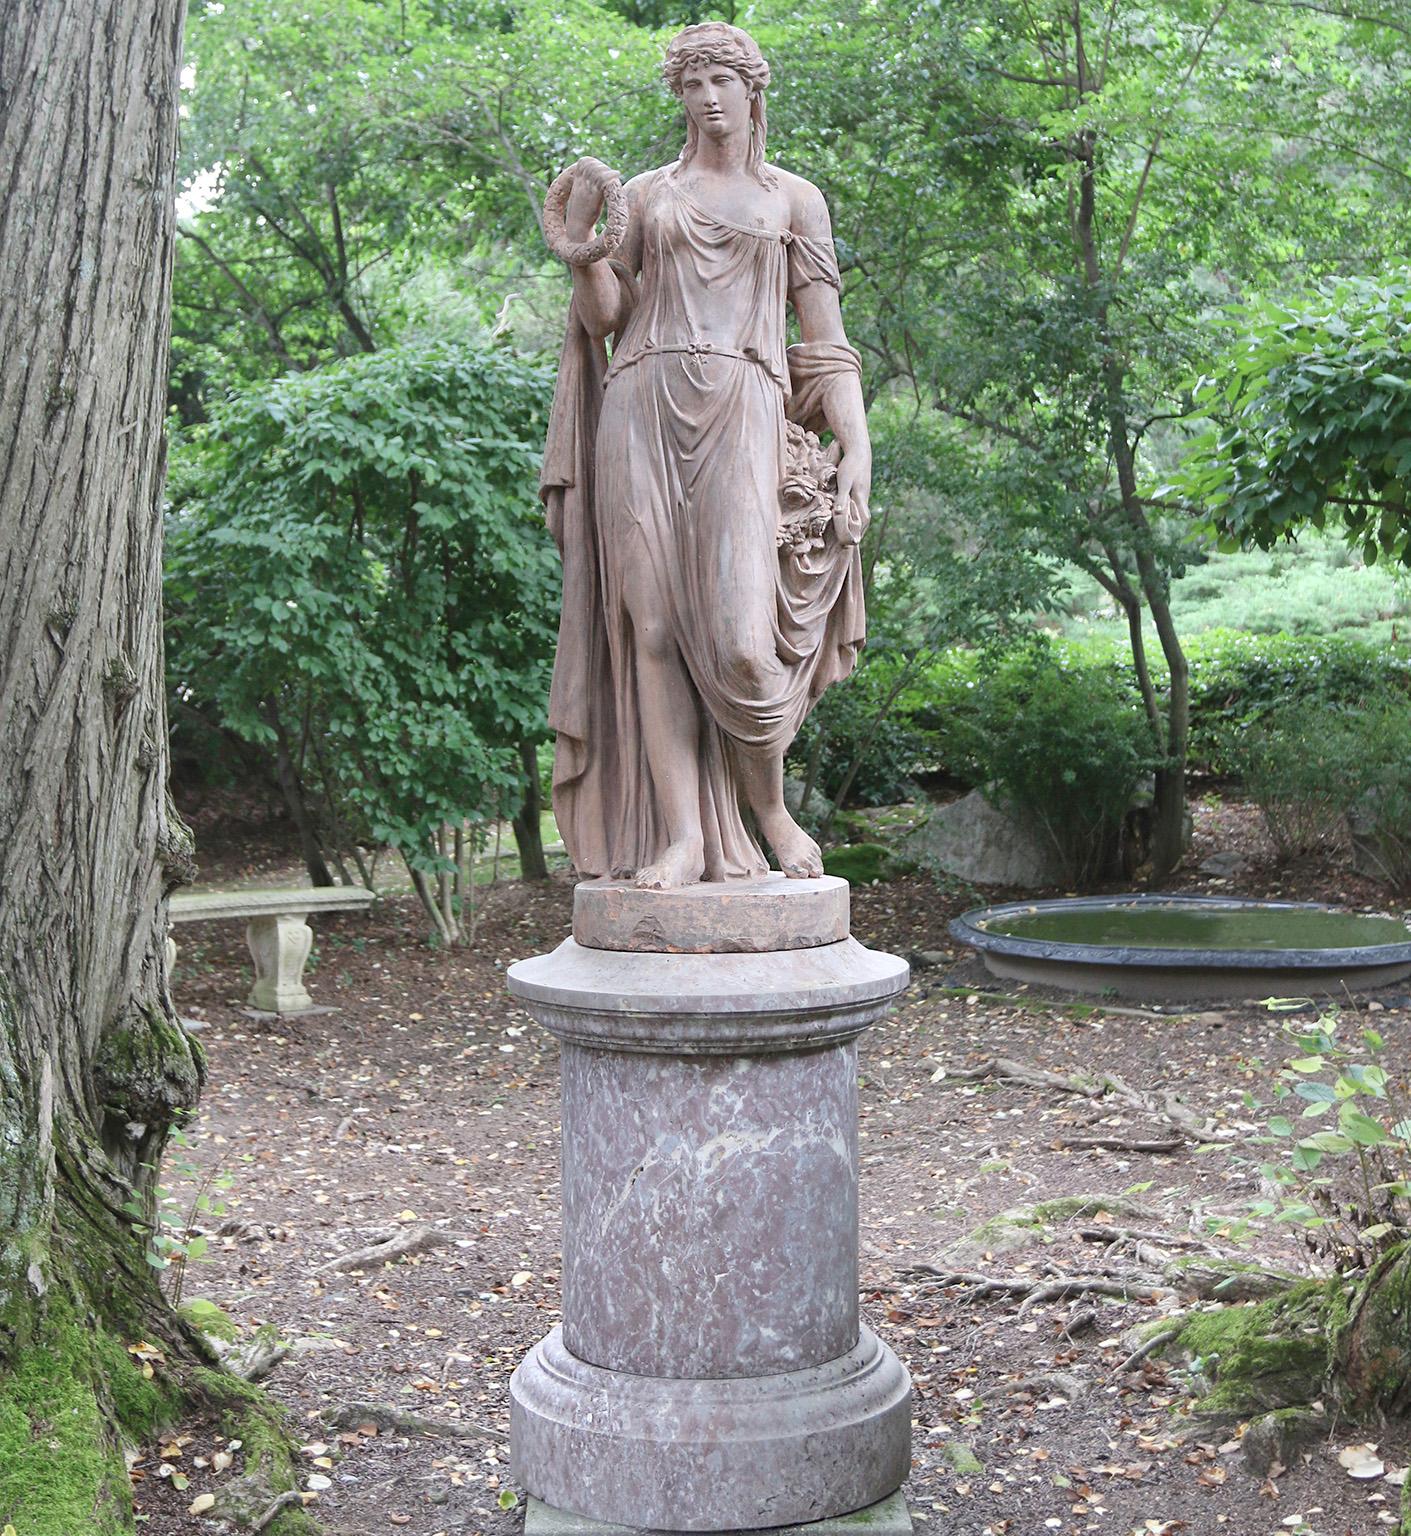 Eine schöne und seltene Terrakotta-Figur der Flora in Kontrapost-Pose, klassisch gekleidet mit hochgestecktem und gelocktem Haar, mit einem Blumenkranz in der rechten Hand der Figur und einem Blumenstrauß in der linken Hand. Das Gesicht der Figur